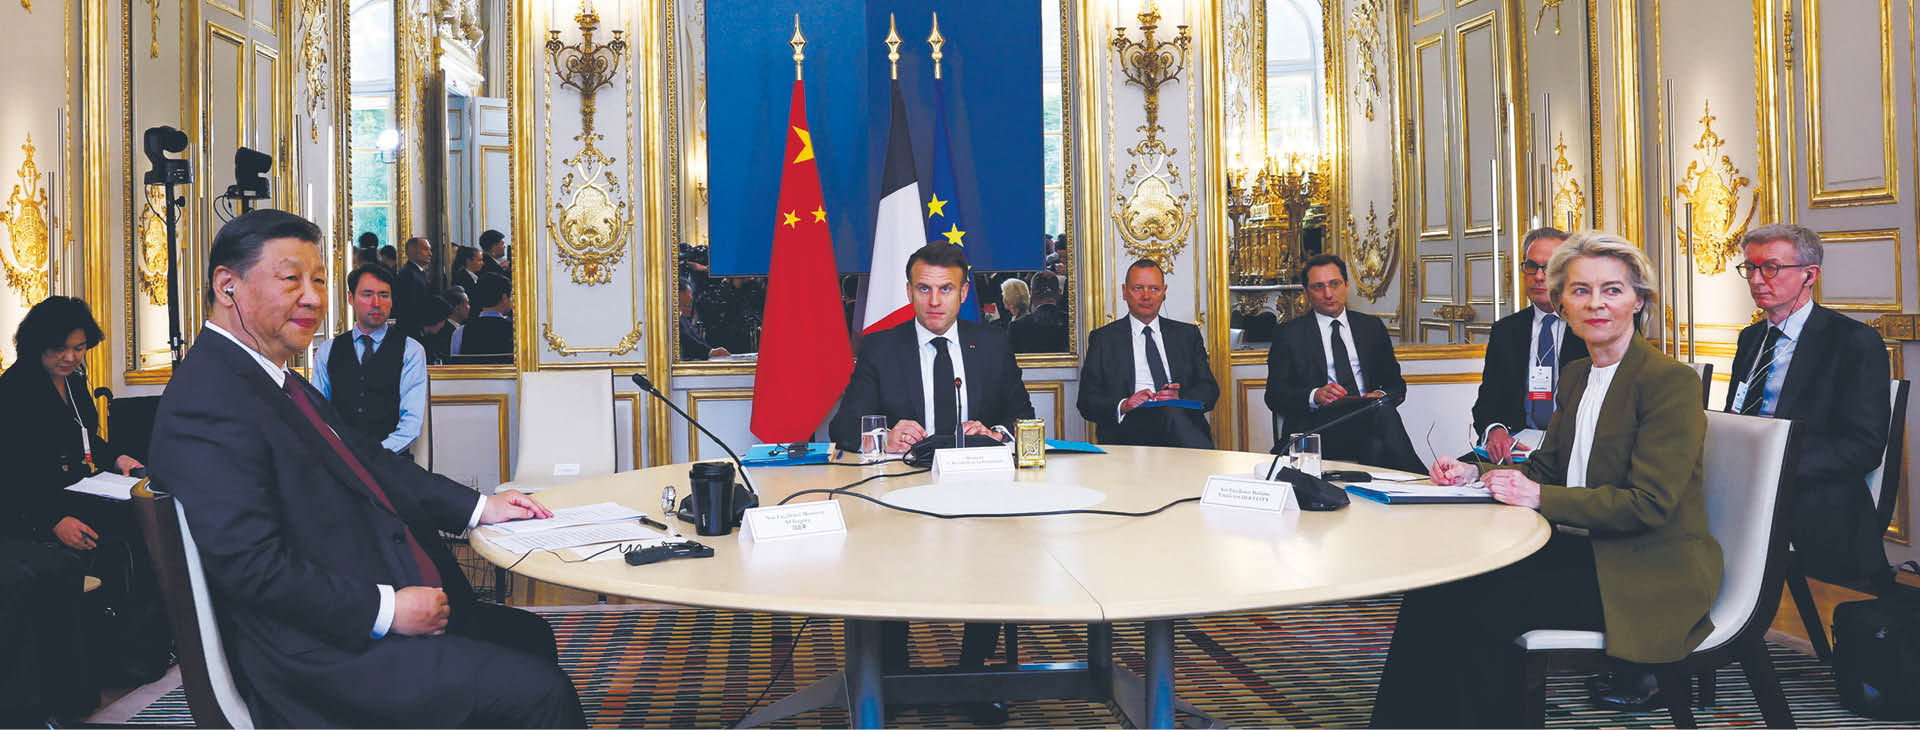 Po wizycie we Francji prezydent Xi uda się do Serbii oraz na Węgry